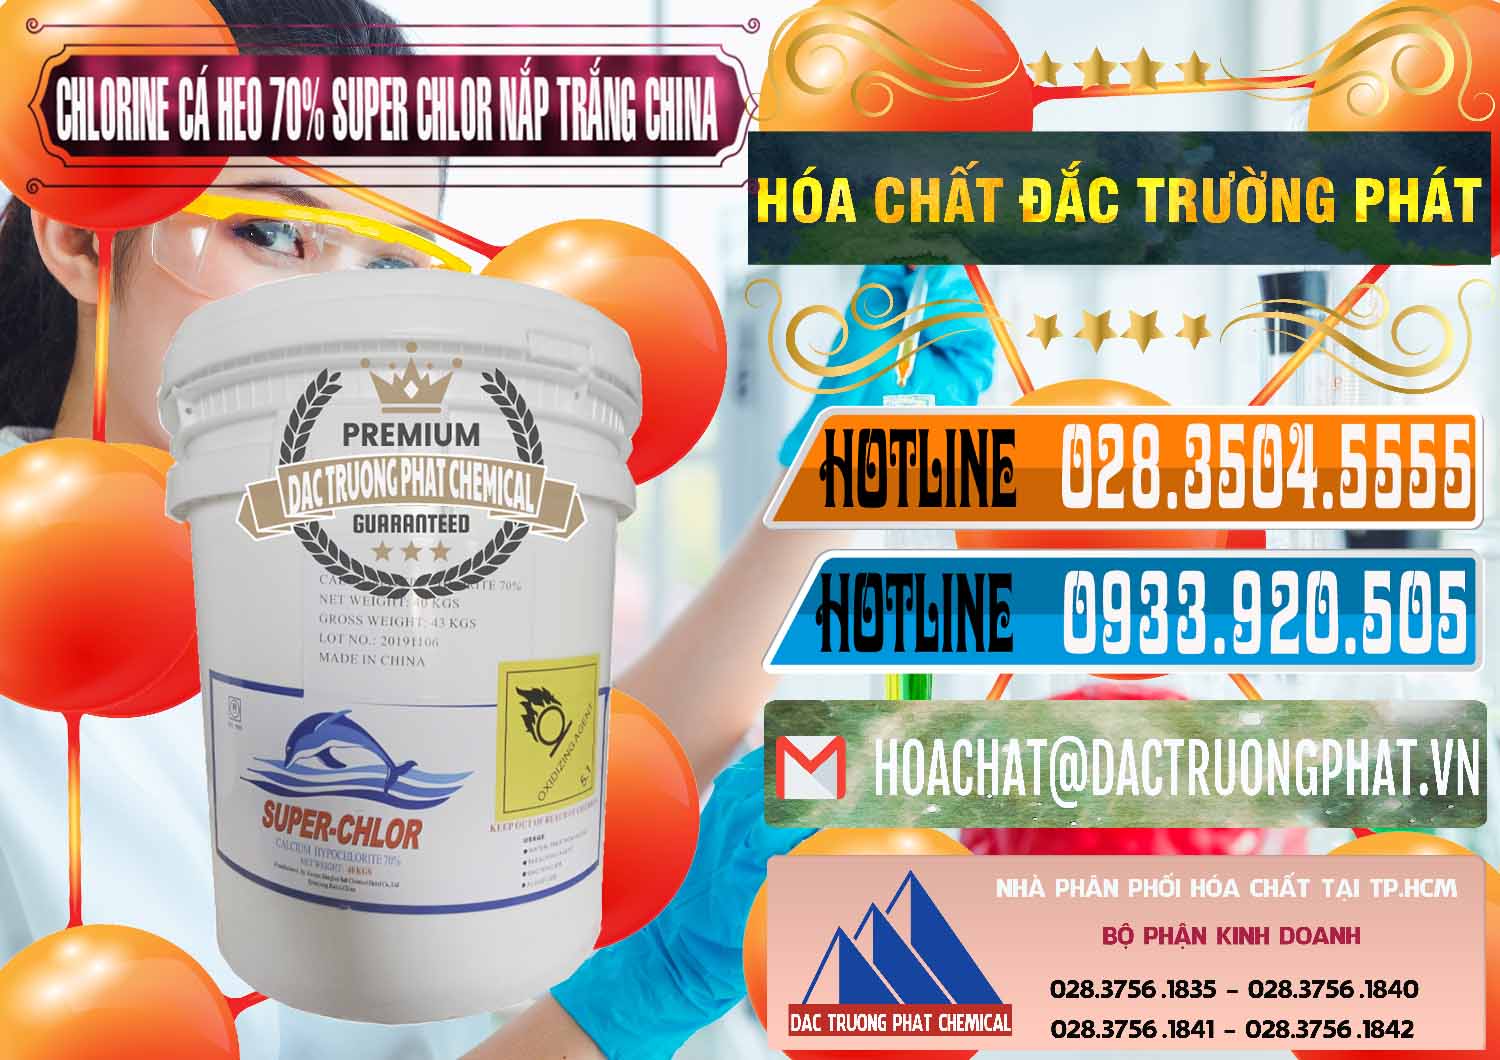 Bán và cung ứng Clorin - Chlorine Cá Heo 70% Super Chlor Nắp Trắng Trung Quốc China - 0240 - Chuyên cung cấp & phân phối hóa chất tại TP.HCM - stmp.net